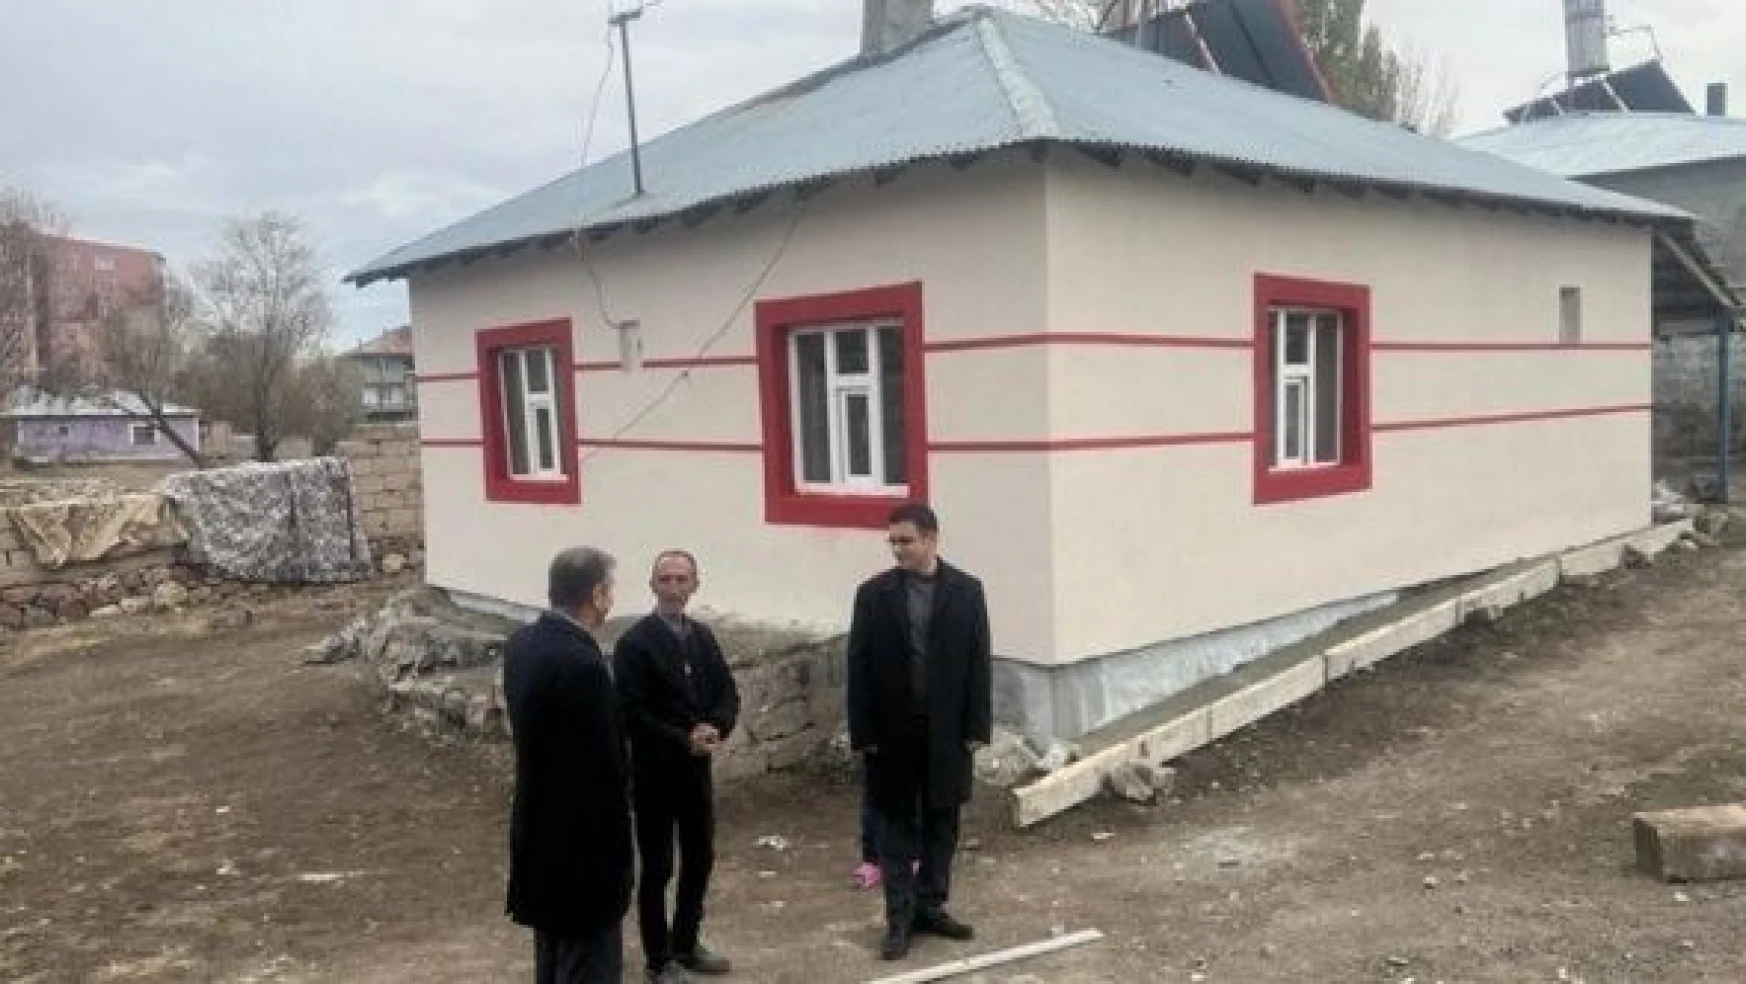 Özalp'ta ihtiyaç sahibi 5 aileye yeni ev yaptırıldı